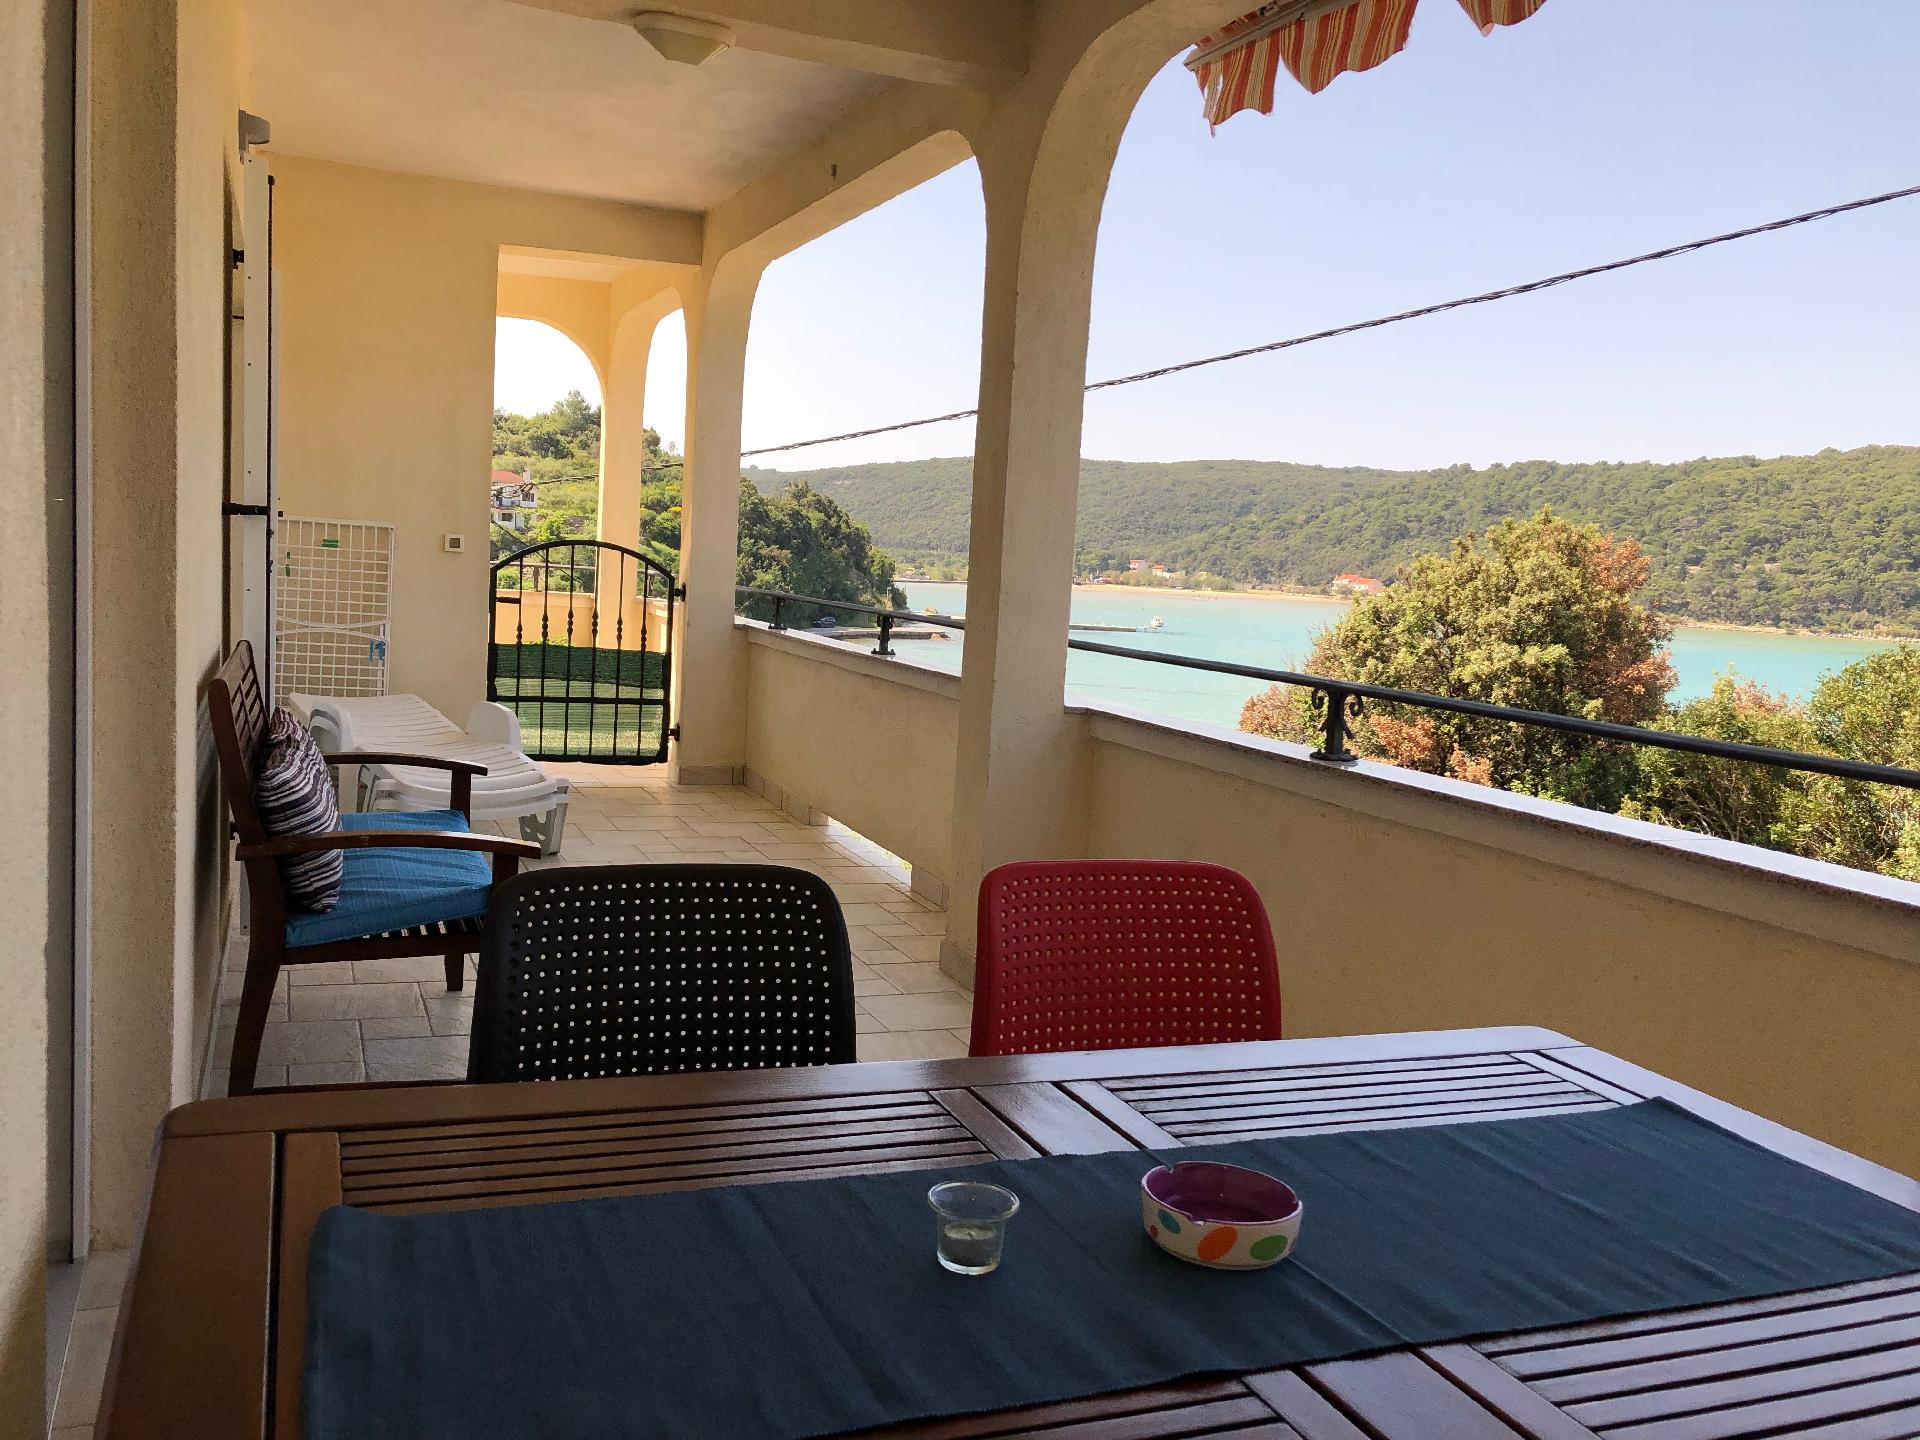 Geräumig ausgelegte Ferienwohnung in der erst Ferienhaus in Kroatien